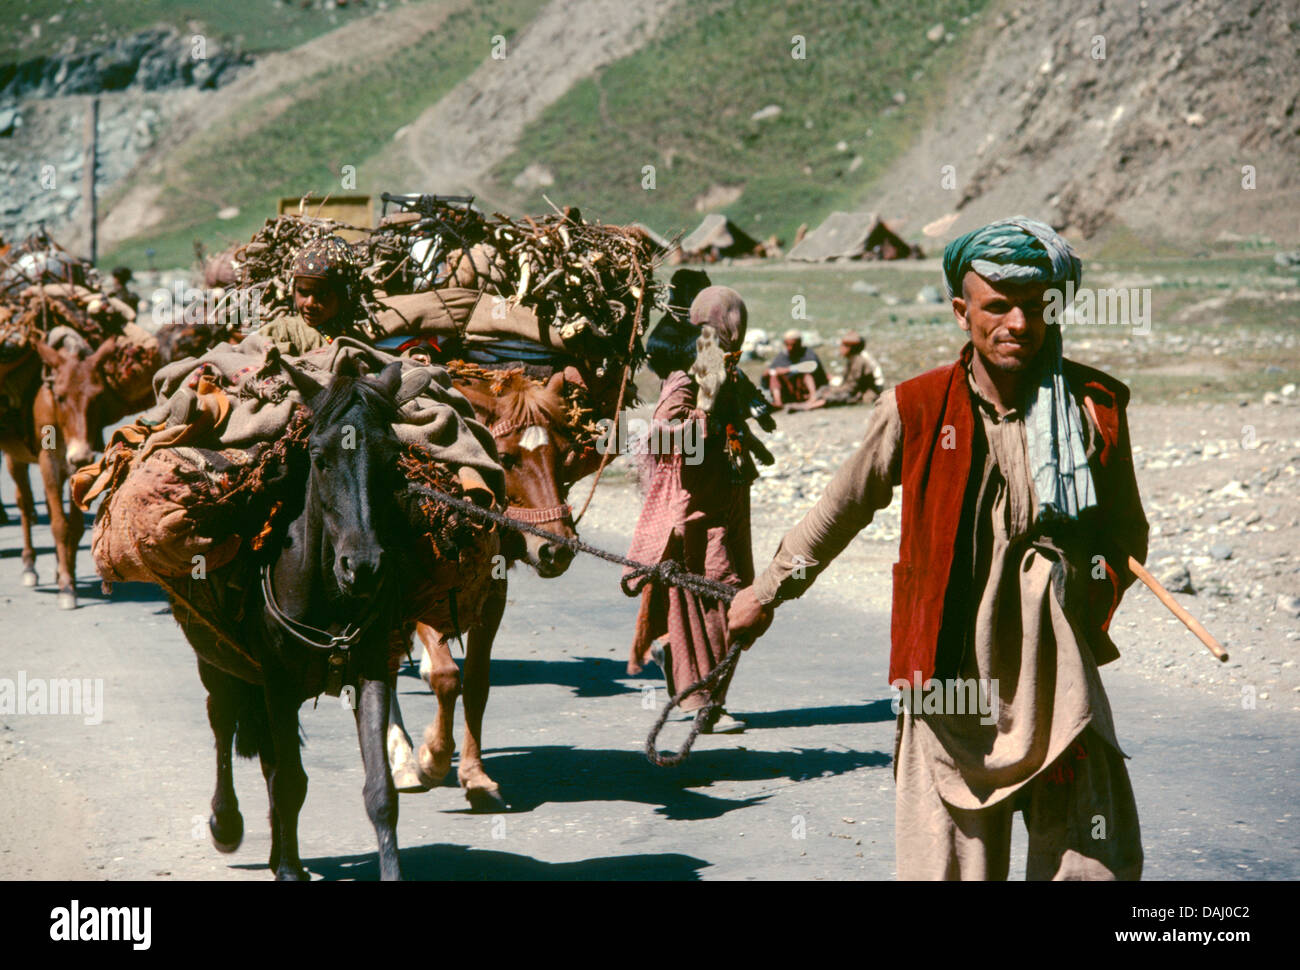 Les nomades du cachemire, Bakarwhal se déplaçant leurs troupeaux aux pâturages d'été en haute altitude. Kasmir, Sonamarg. L'Inde Banque D'Images